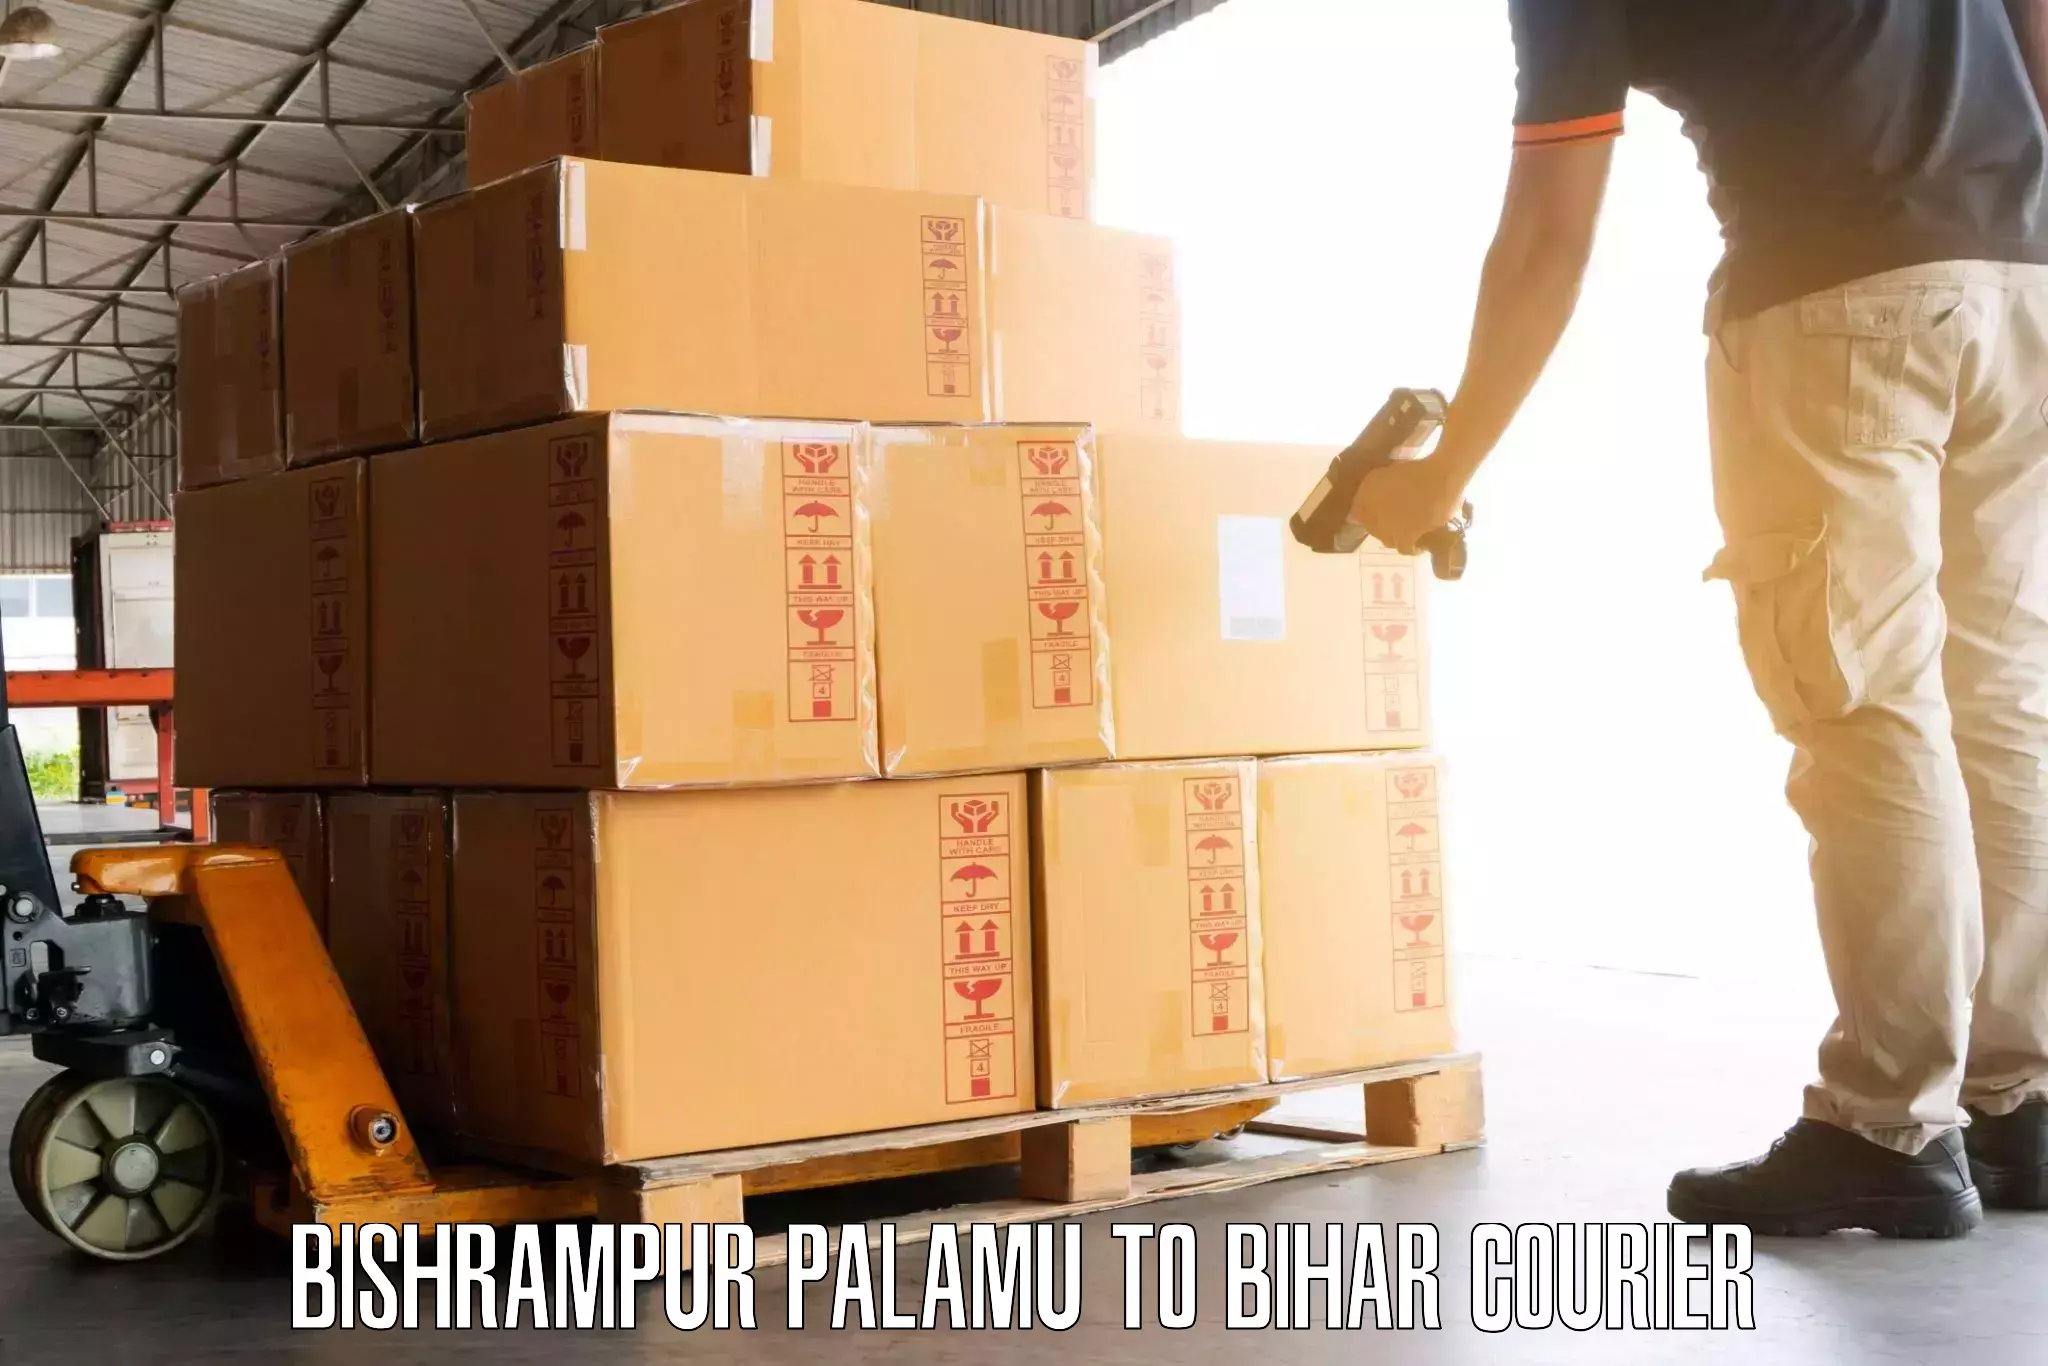 Hassle-free luggage shipping Bishrampur Palamu to Rusera